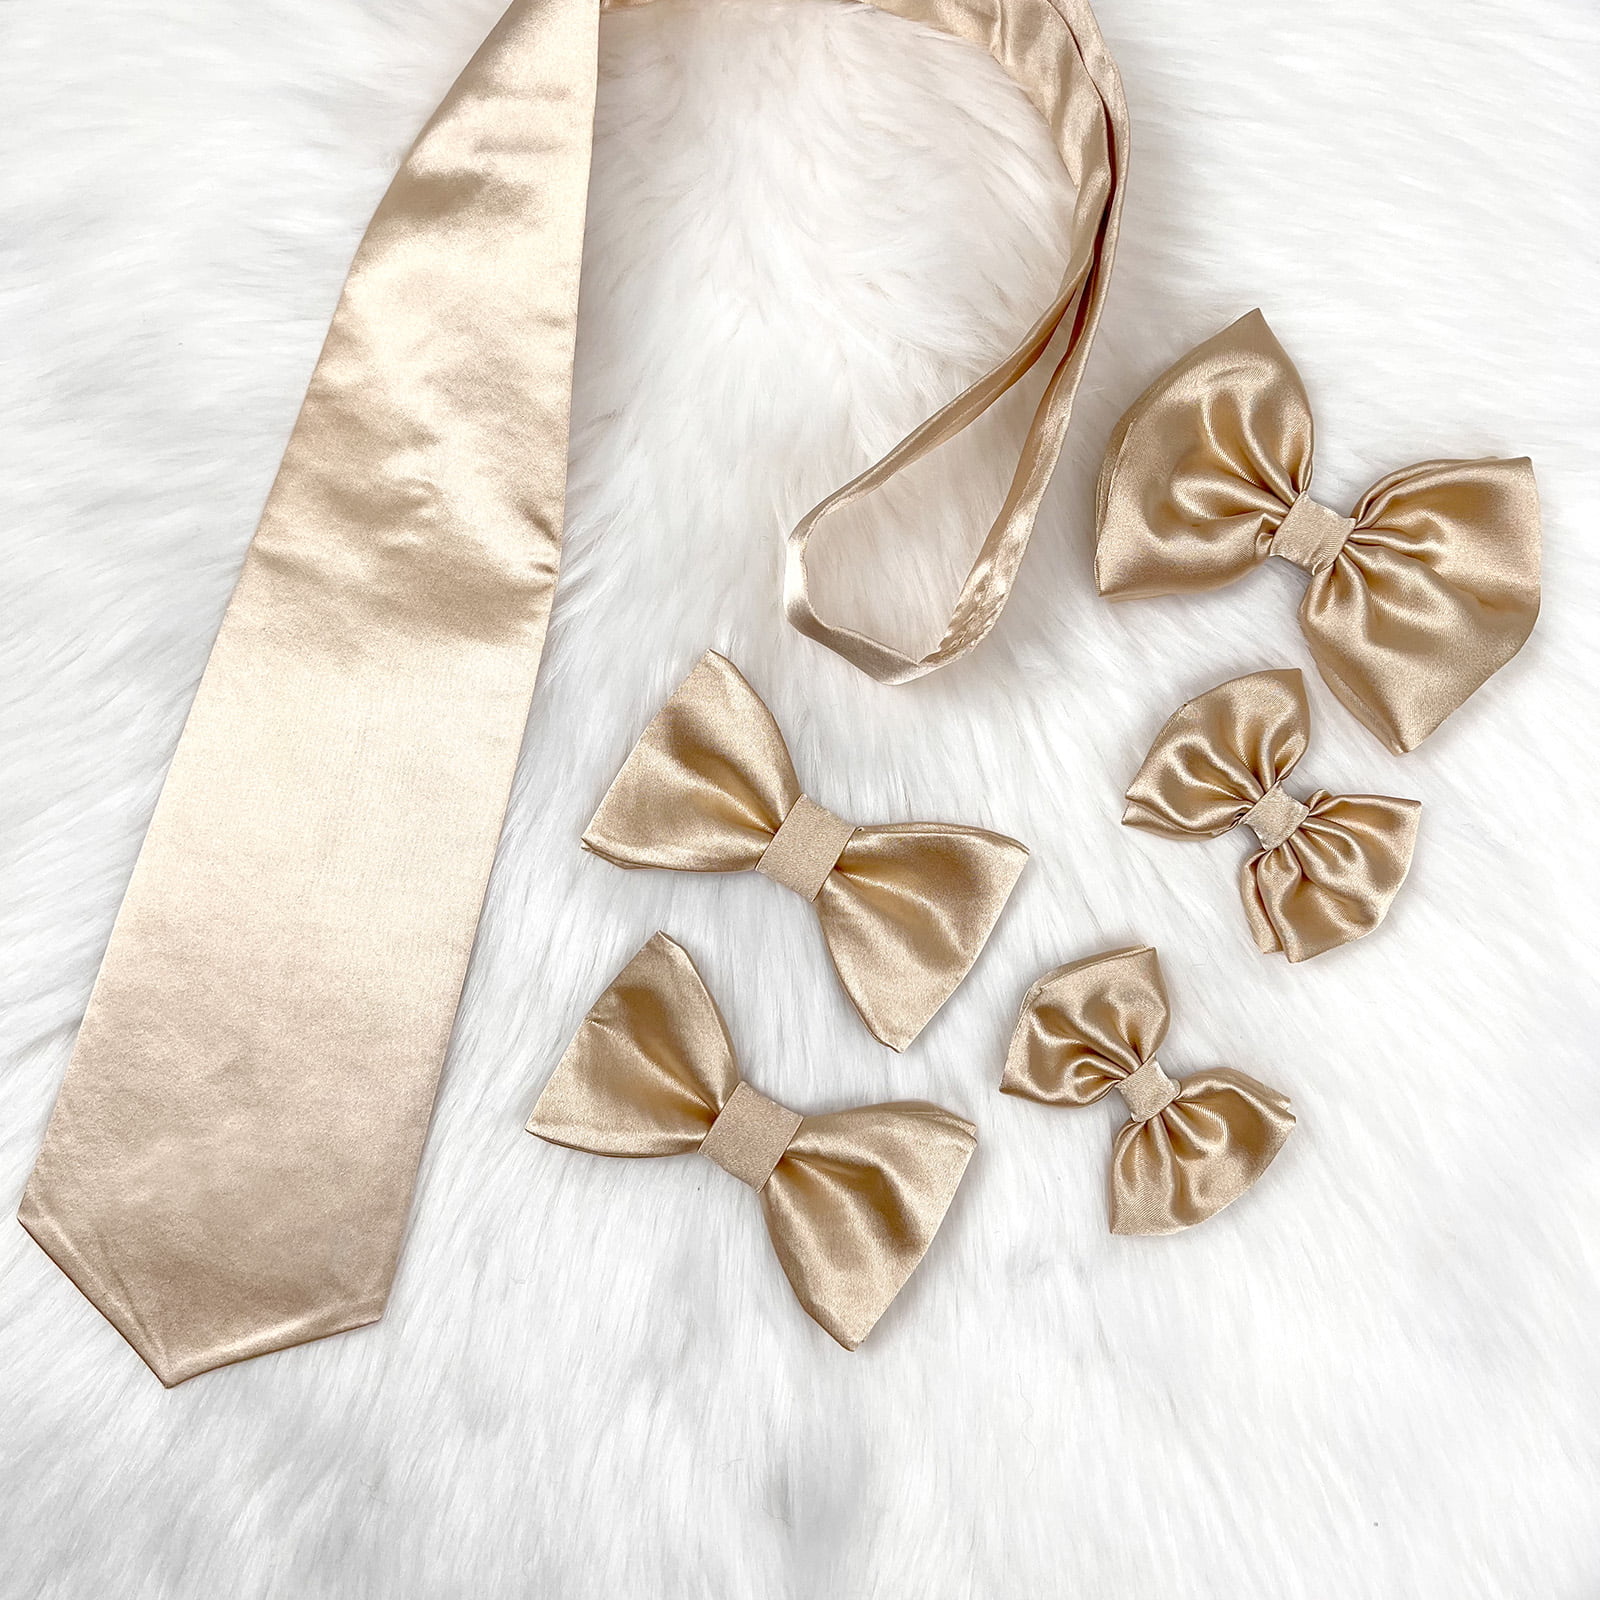 family zlatni set kravata, šnalica, mašna i leptir mašna